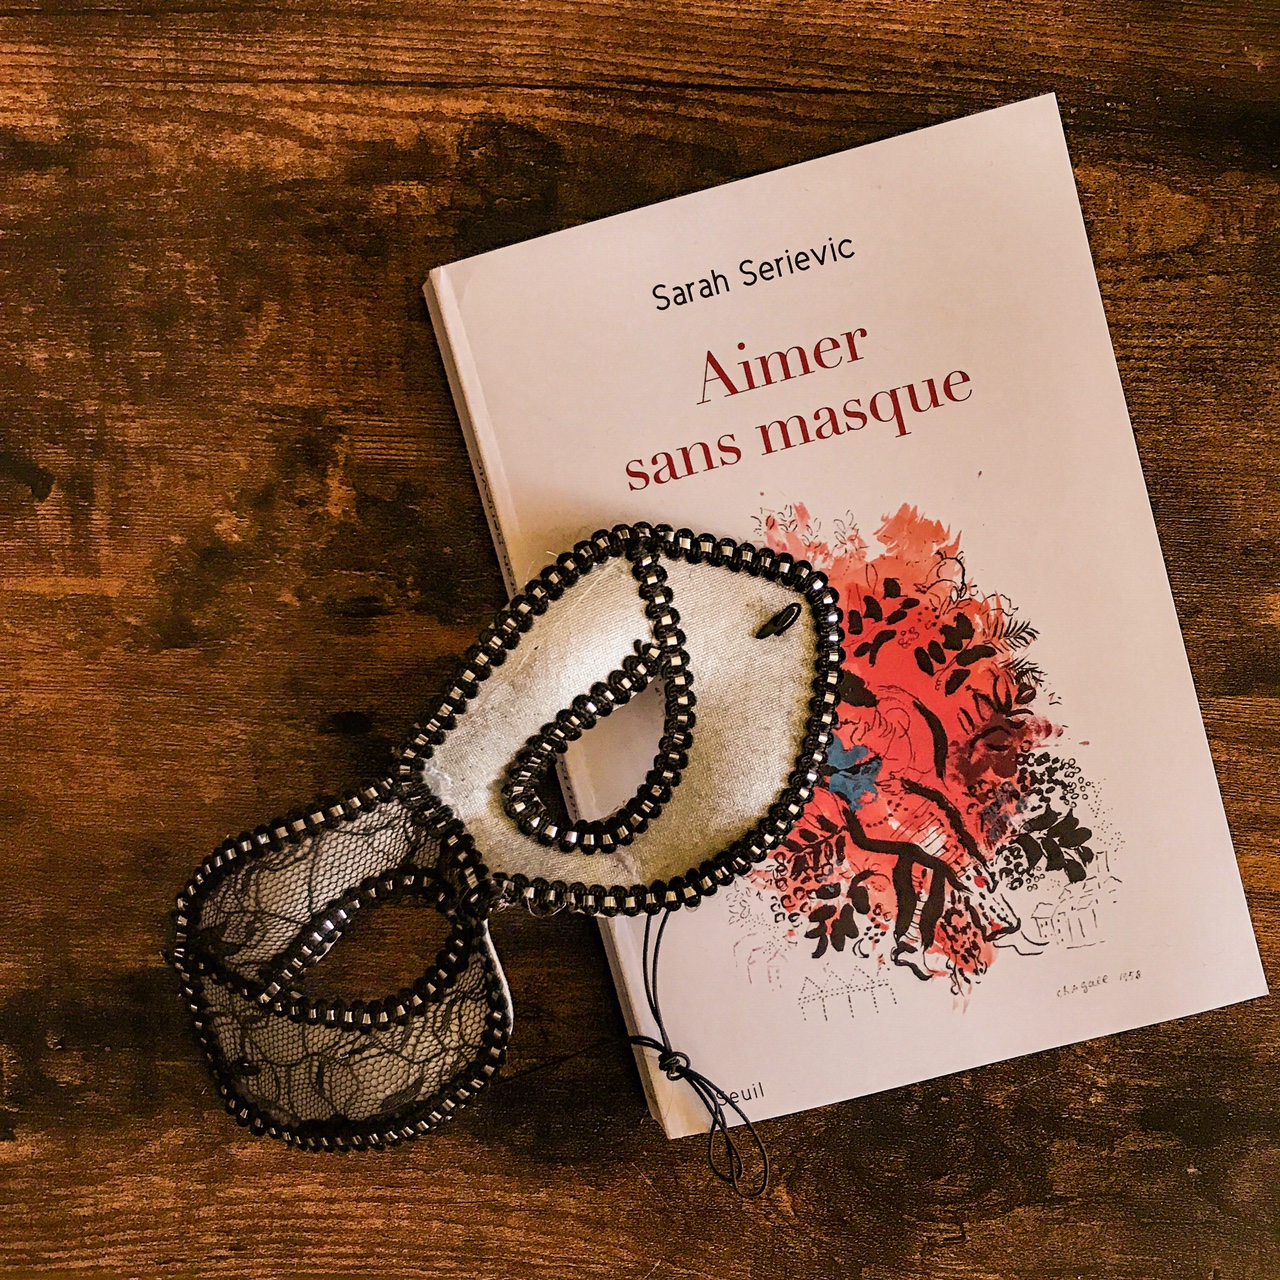 Aimer sans masque, de Sarah Serievic : jouer son propre rôle